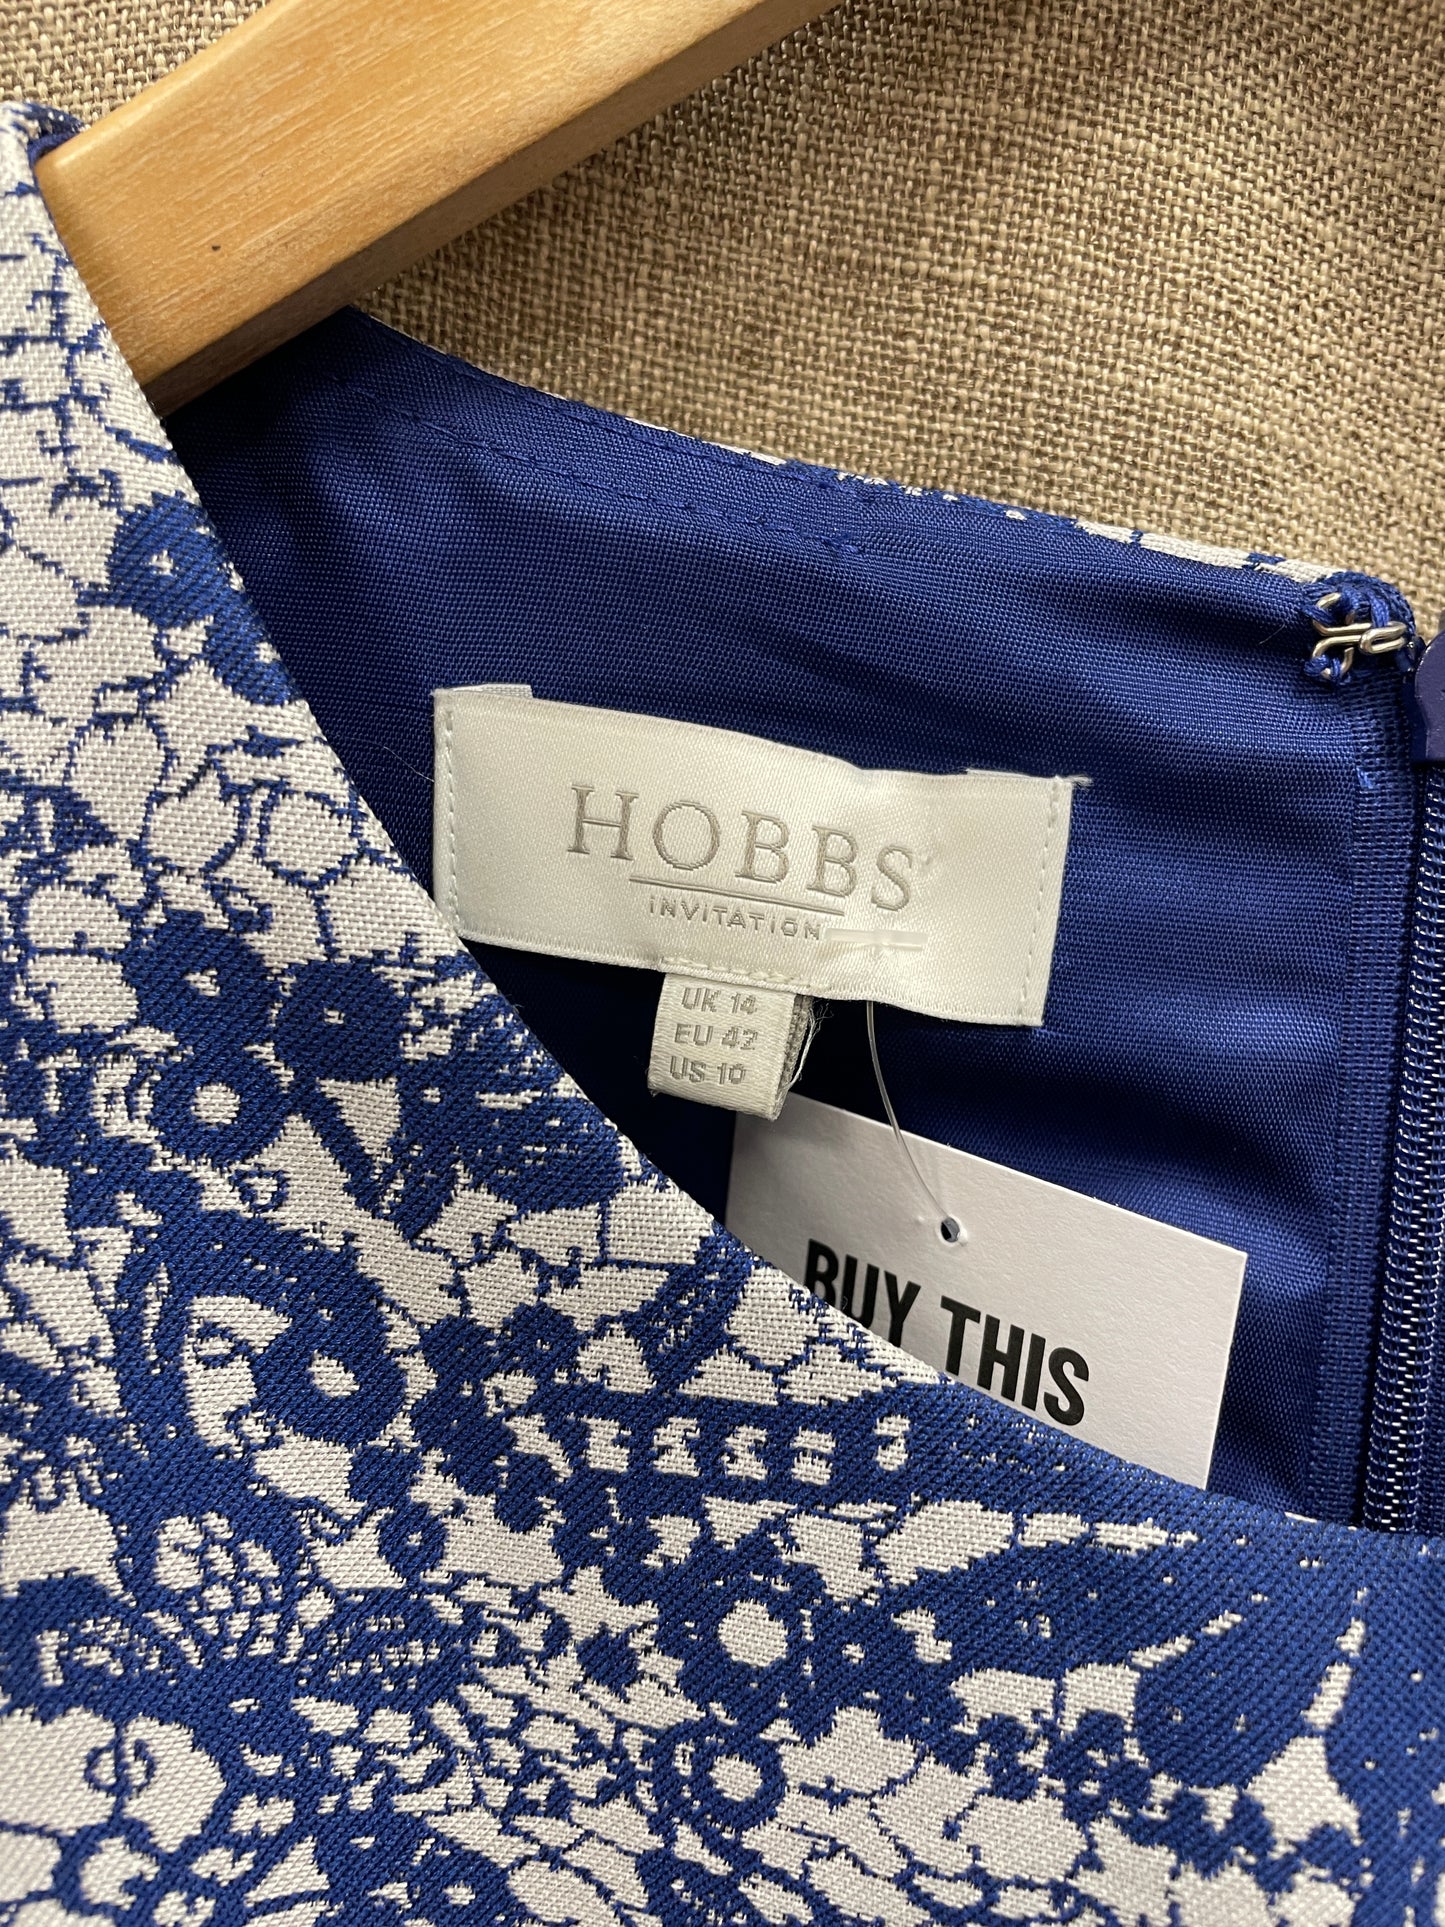 Hobbs White & Blue Patterned Sleeveless Shift Dress Size 14